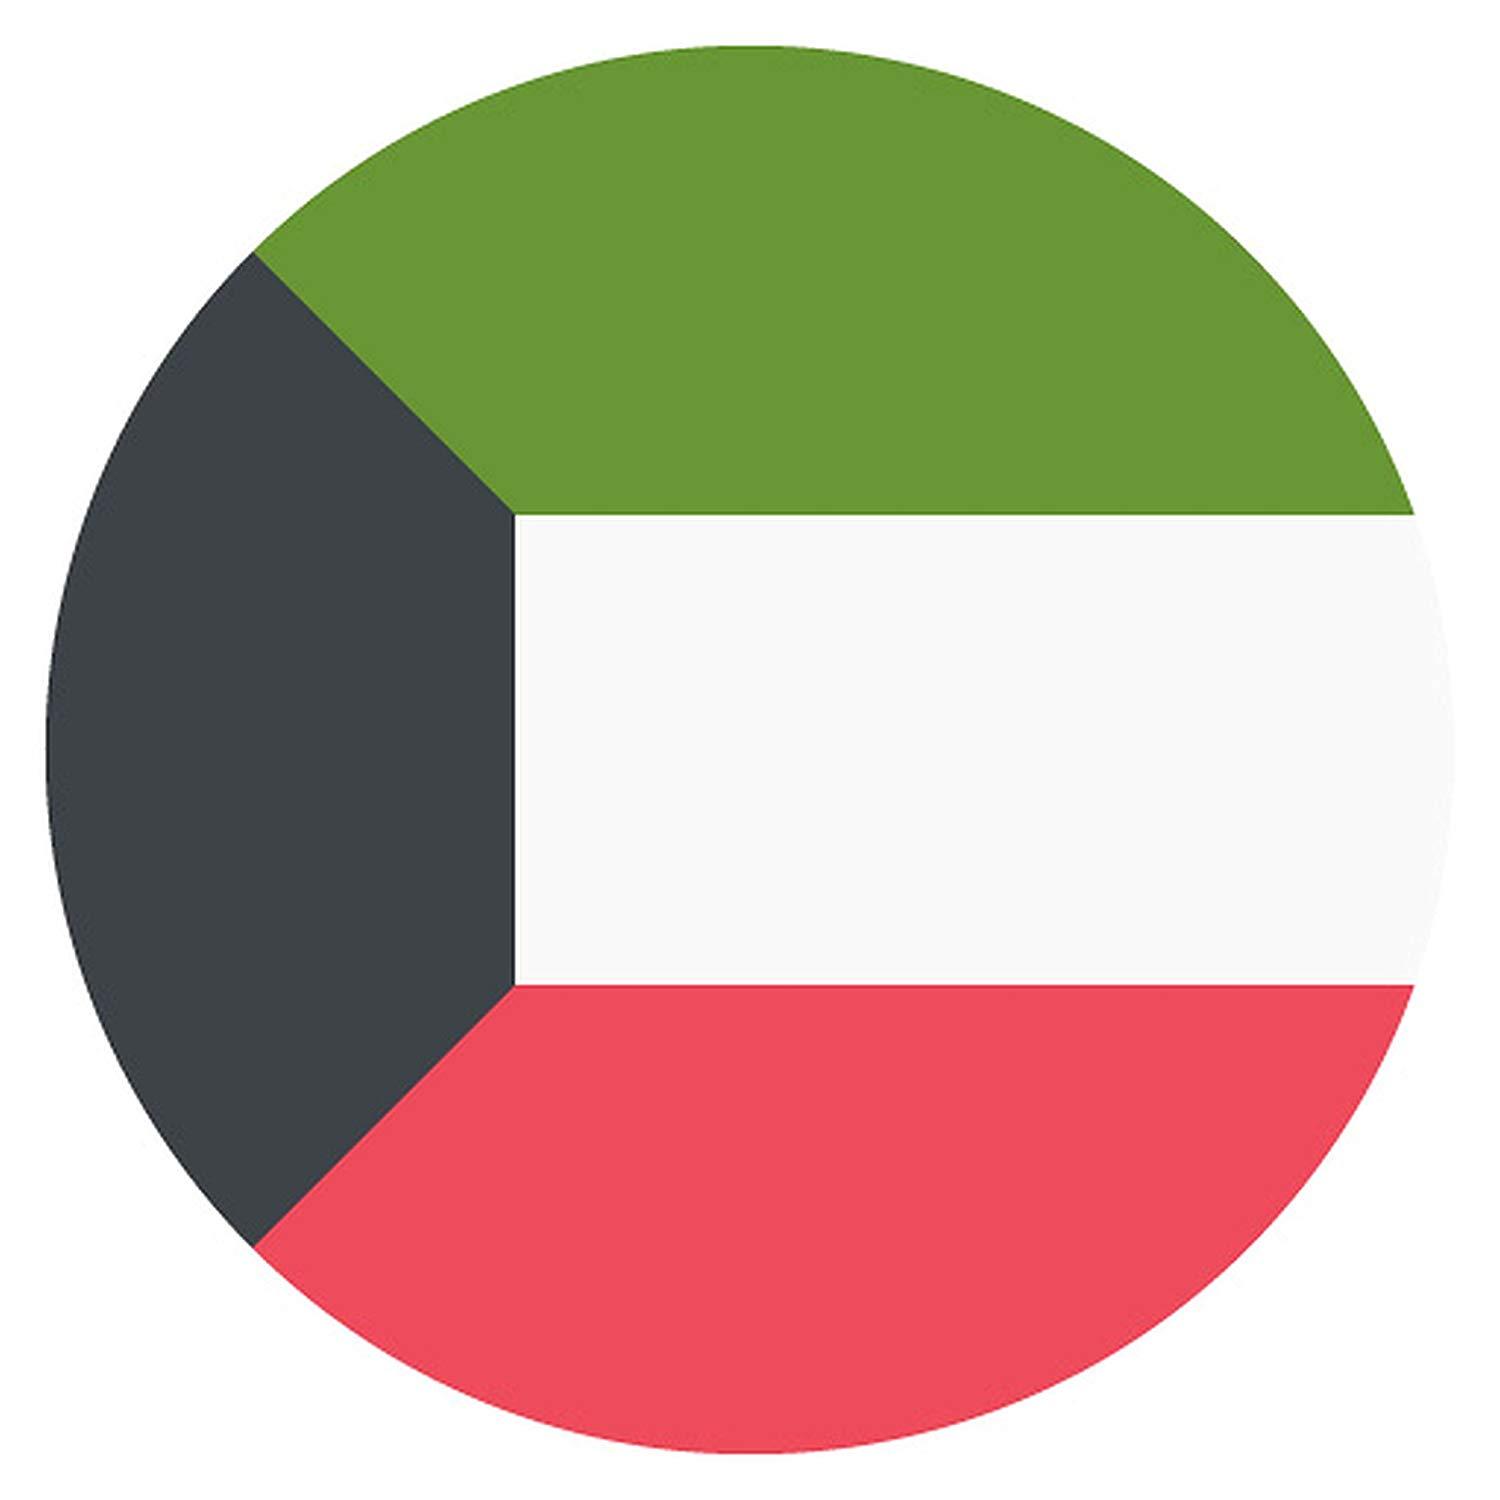 Kuwait Flag, Meaning of Kuwait Flag